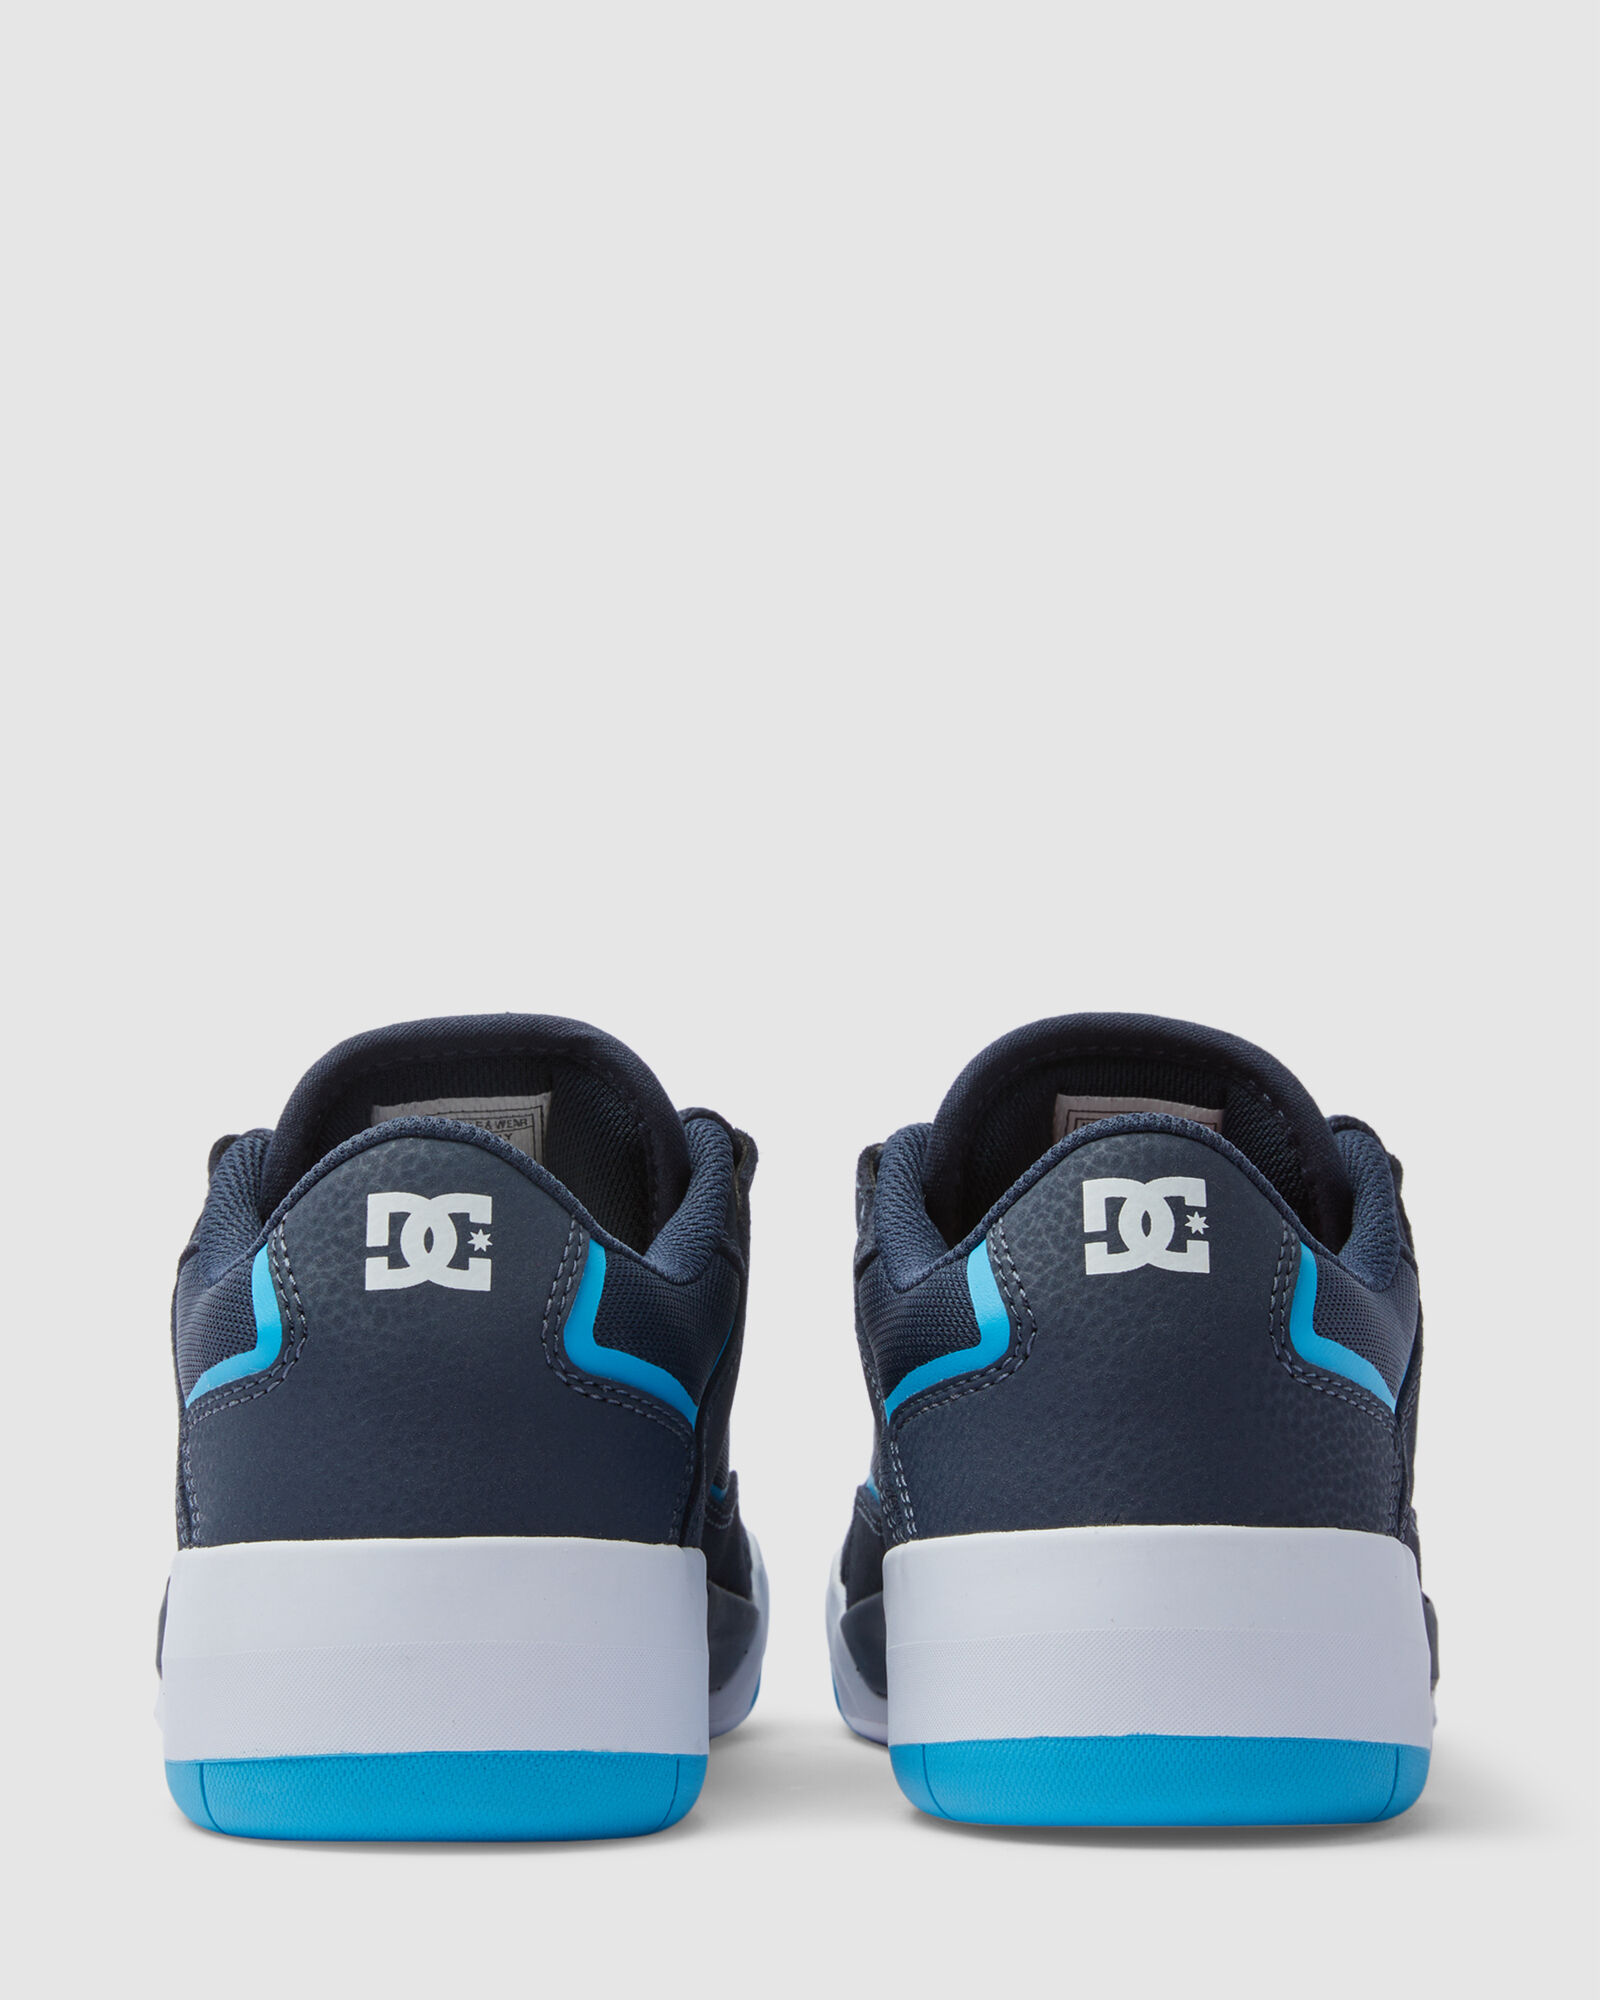 DC Shoes Shoes | Pure Shoes Black/Grey/Blue - Mens ⋆ Drzubedatumbi